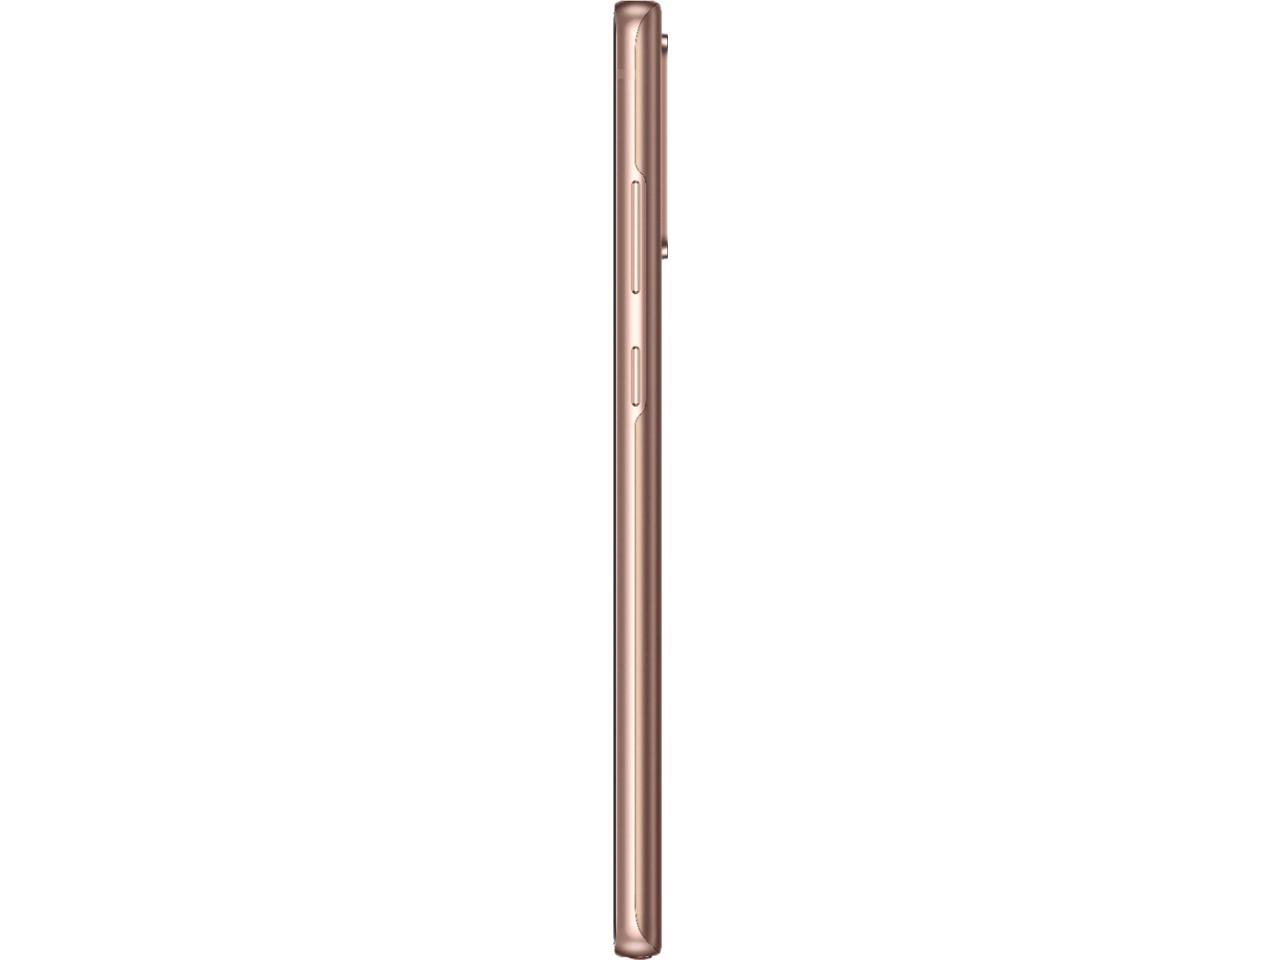 Samsung Galaxy Note20 N980F 256GB Hybrid Dual SIM Unlocked GSM Smartphone - Mystic Bronze - International Model